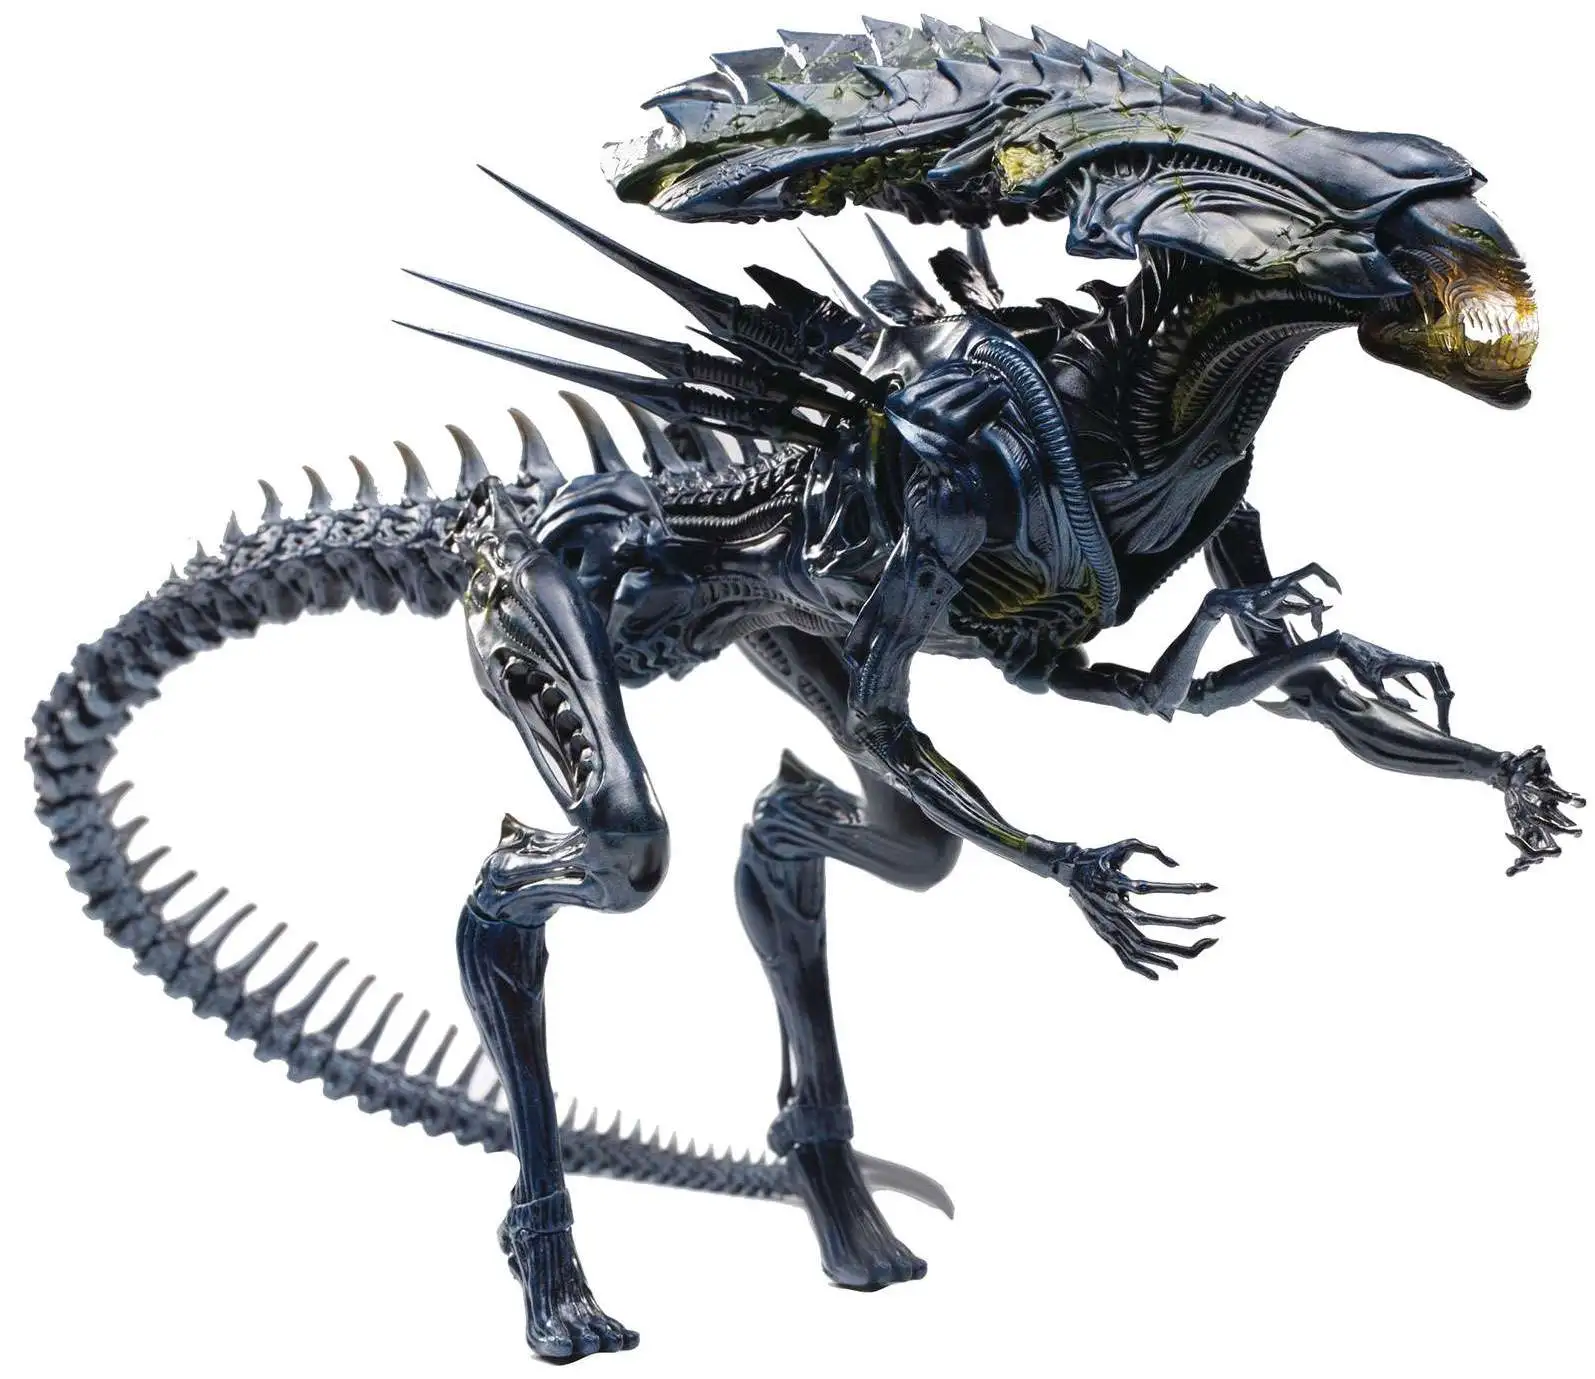 AVP Alien vs. Predator Alien Queen Exclusive Action Figure [Battle-Damaged]